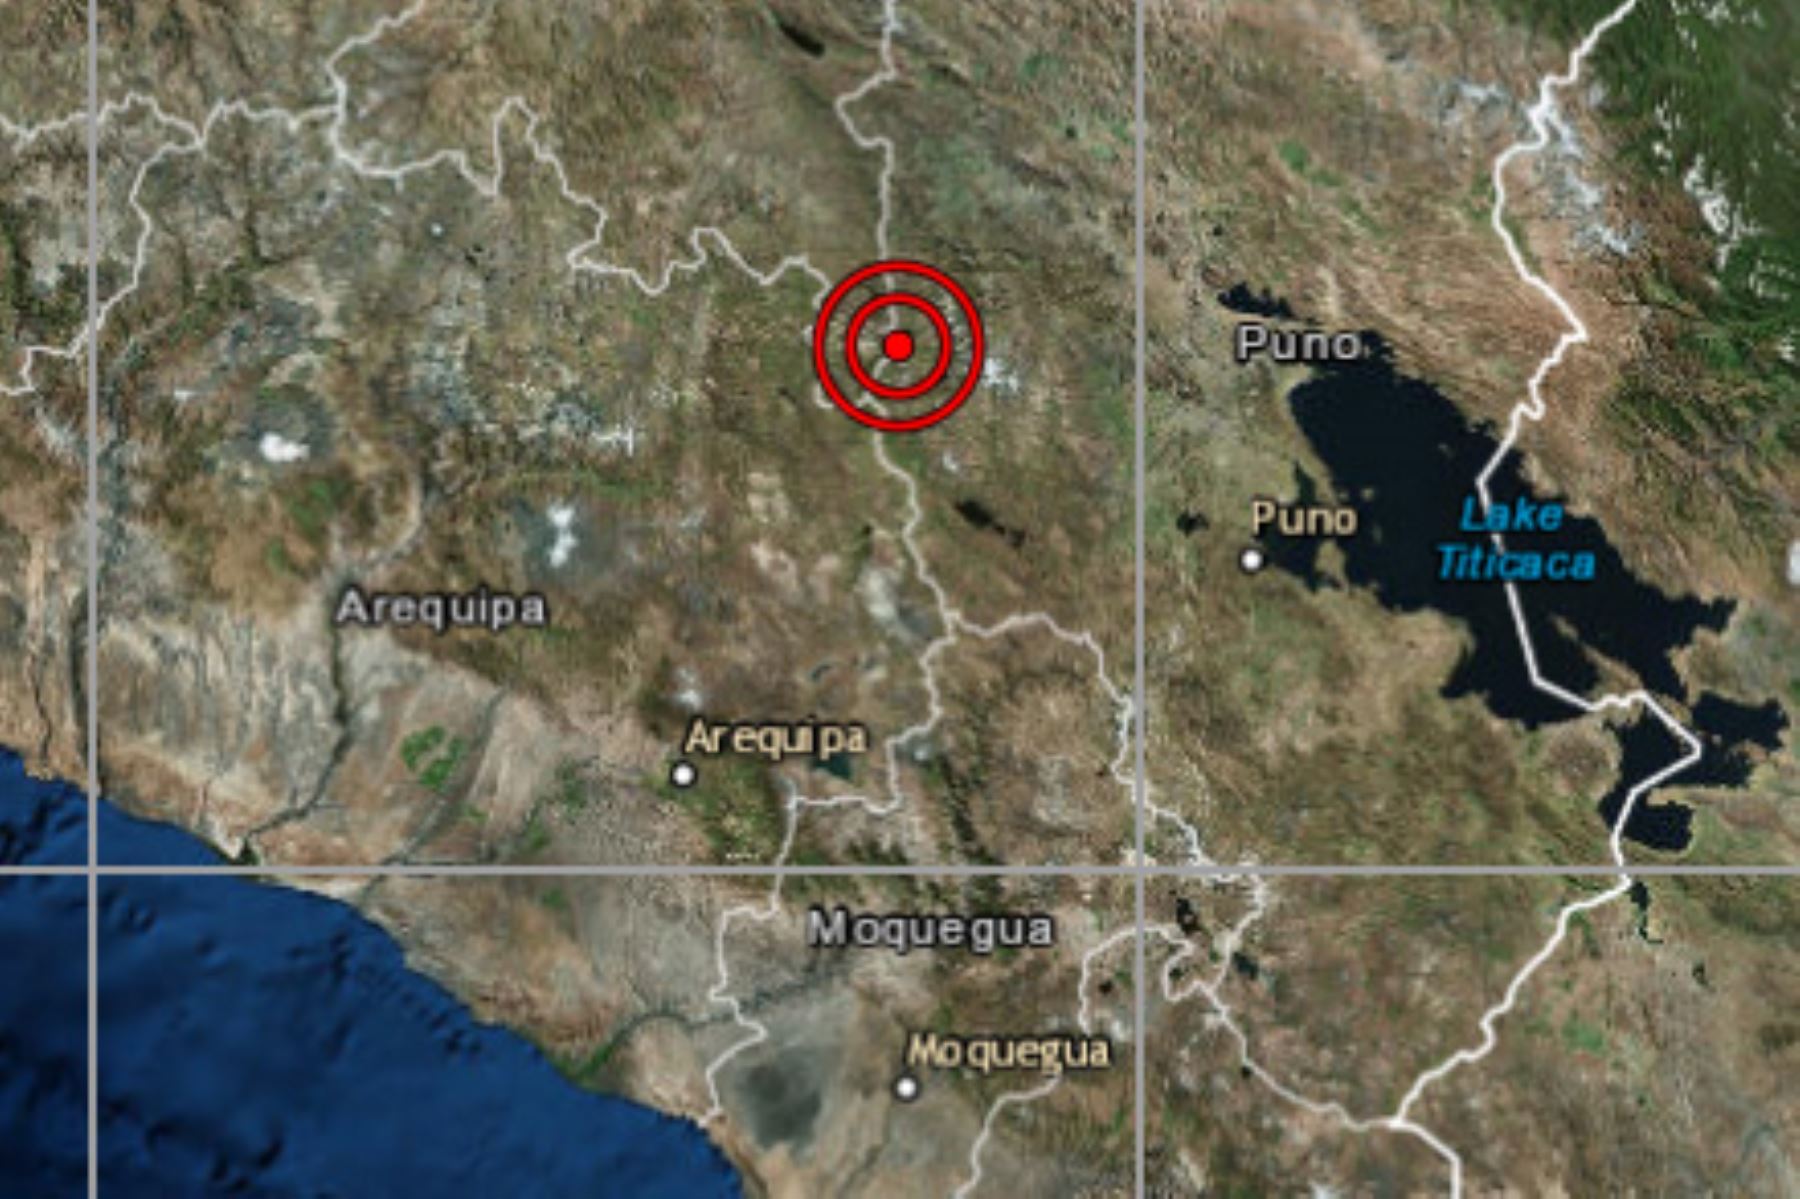 El distrito de Ocuviri, ubicado en la provincia puneña de Lampa, registró hoy dos nuevos sismos en menos de 20 minutos. ANDINA/Difusión